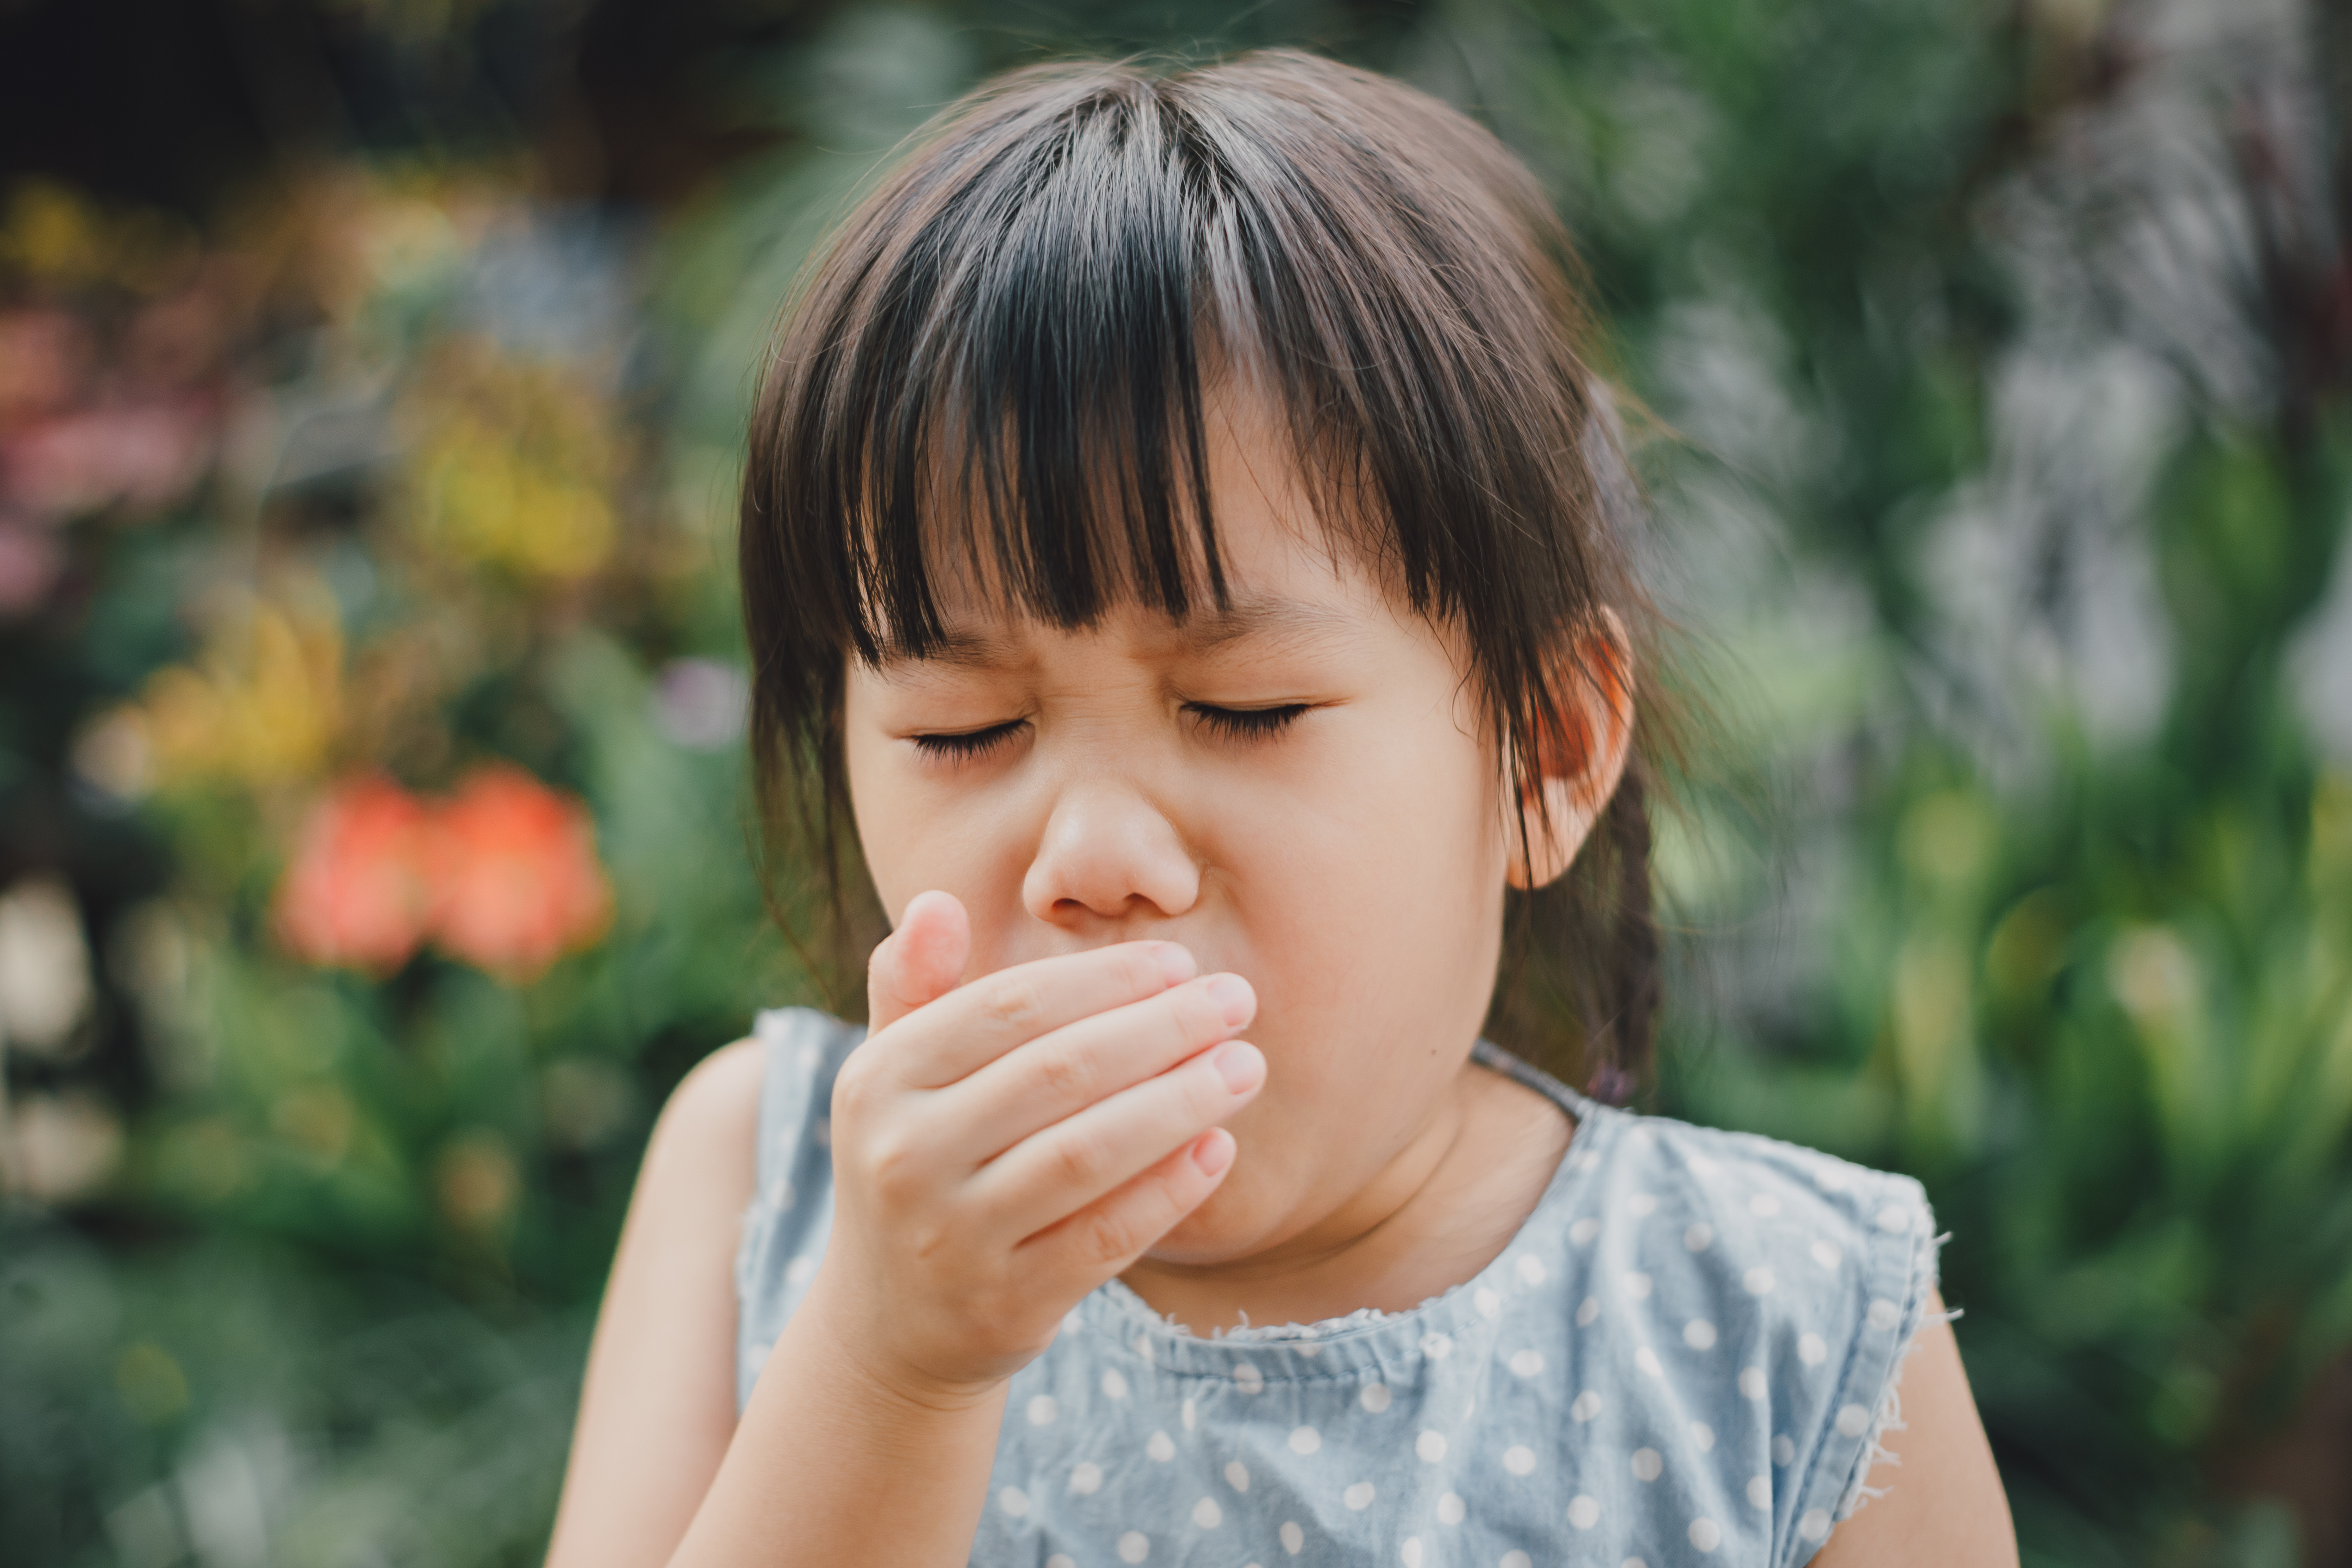 Traitement de la toux aiguë chez l'enfant. Que dit la science ?